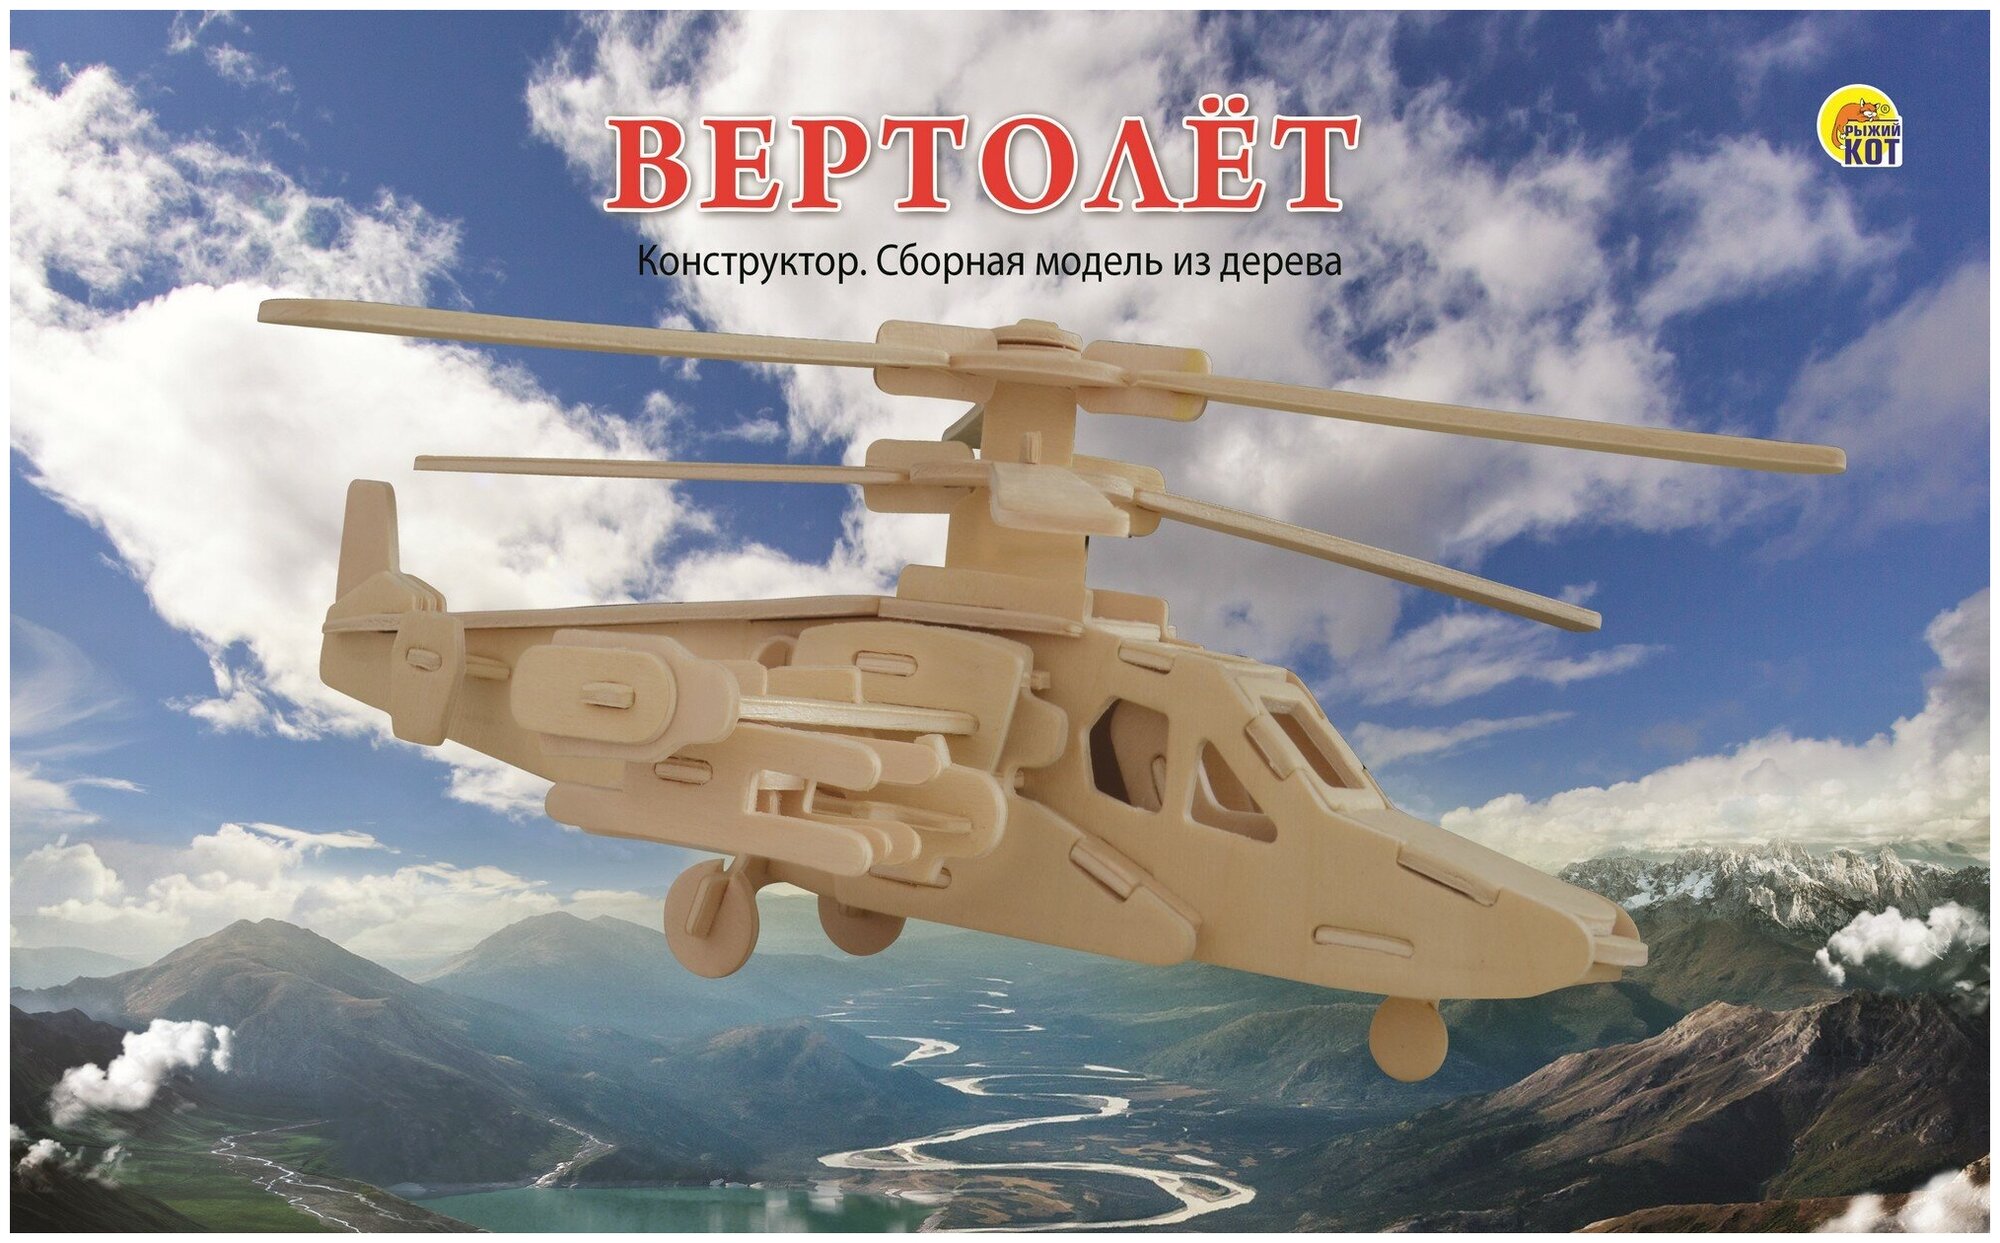 Сборная модель из дерева 2 big "Вертолет